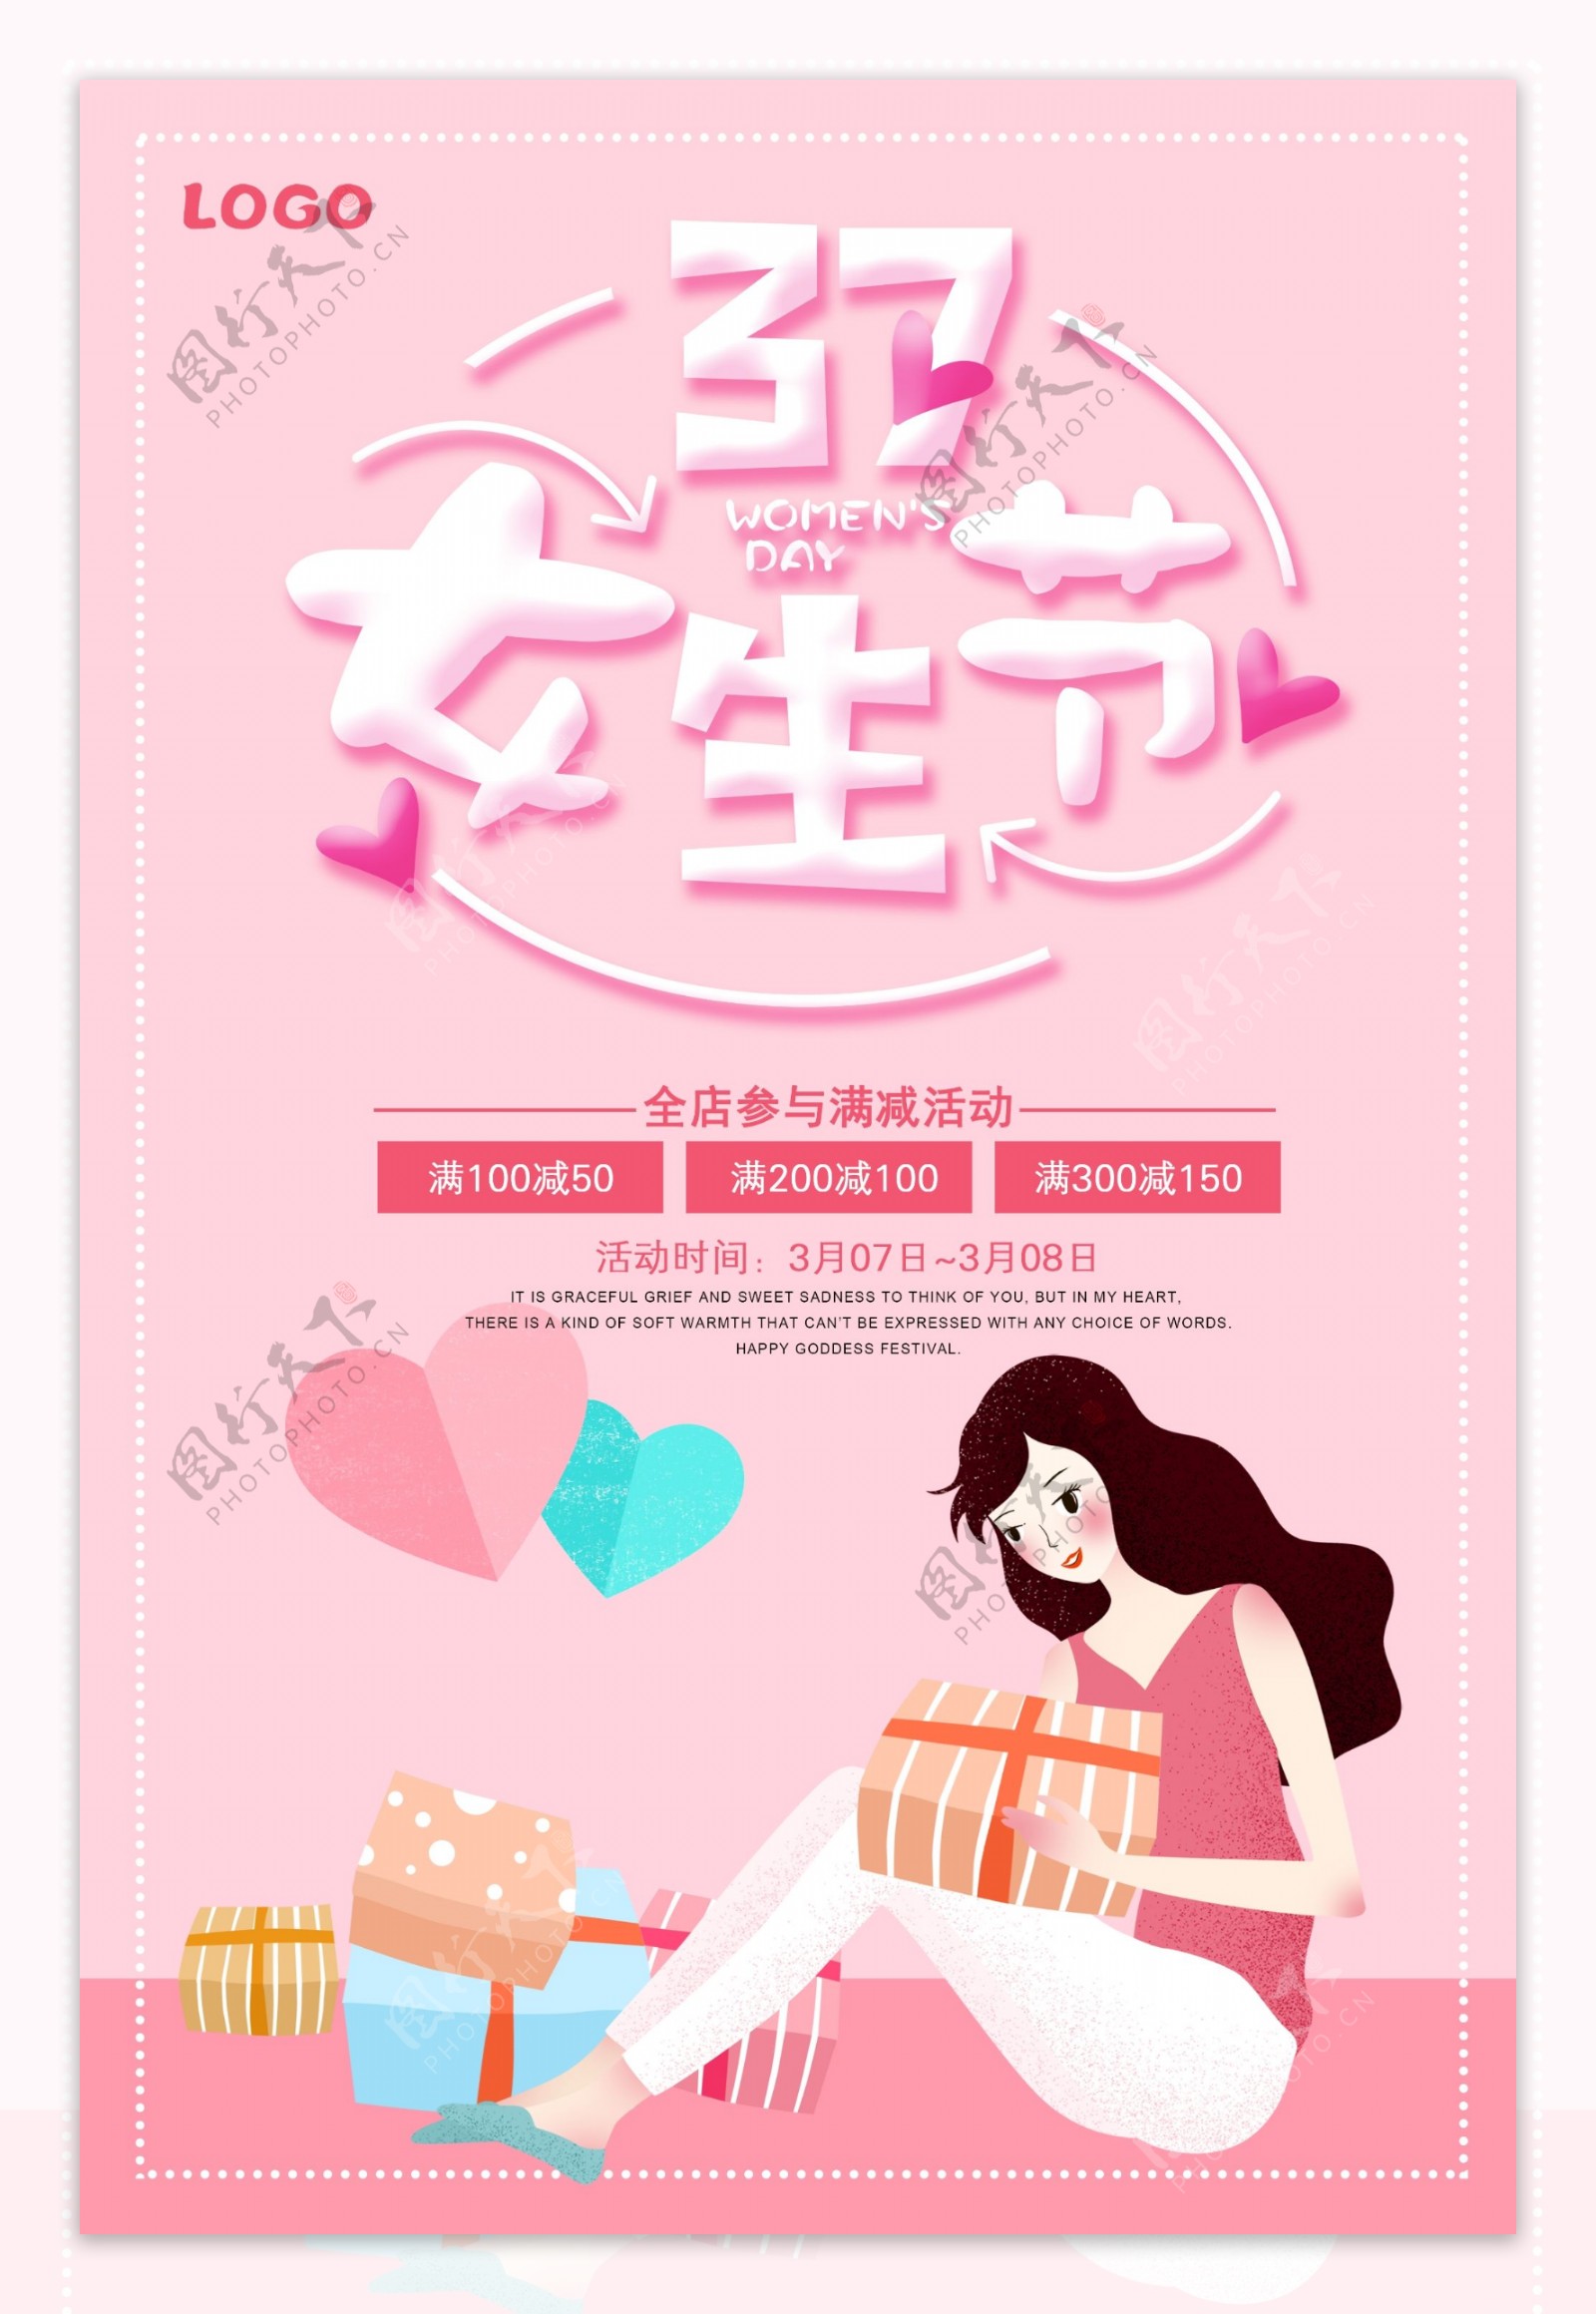 37女生节特价促销粉色海报psd